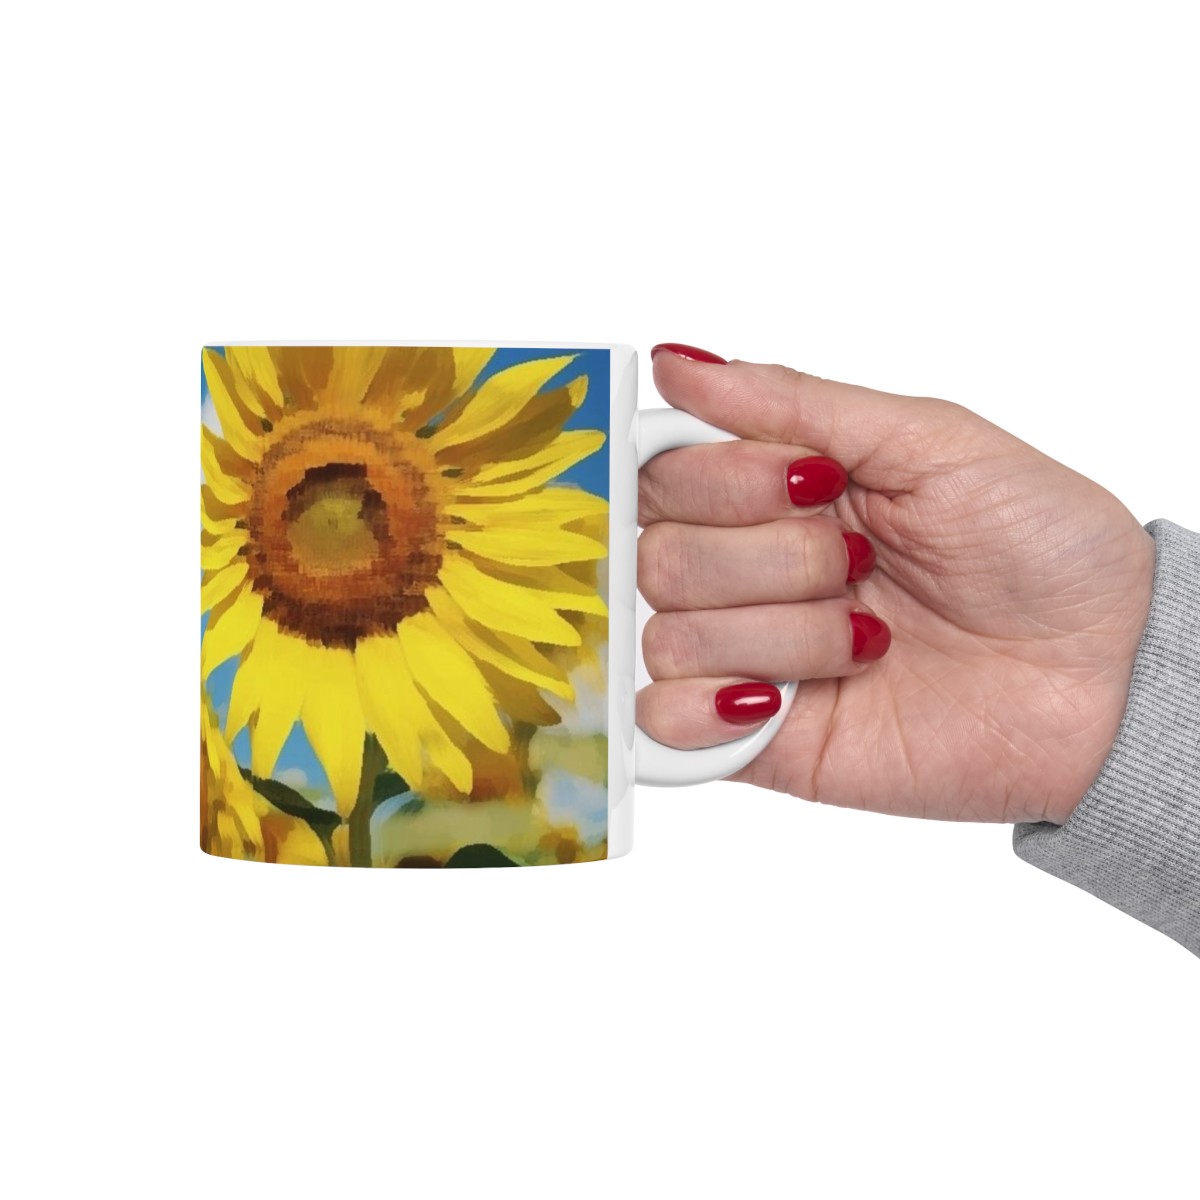 "Mighty Sunflower" Ceramic Mug 11oz product thumbnail image